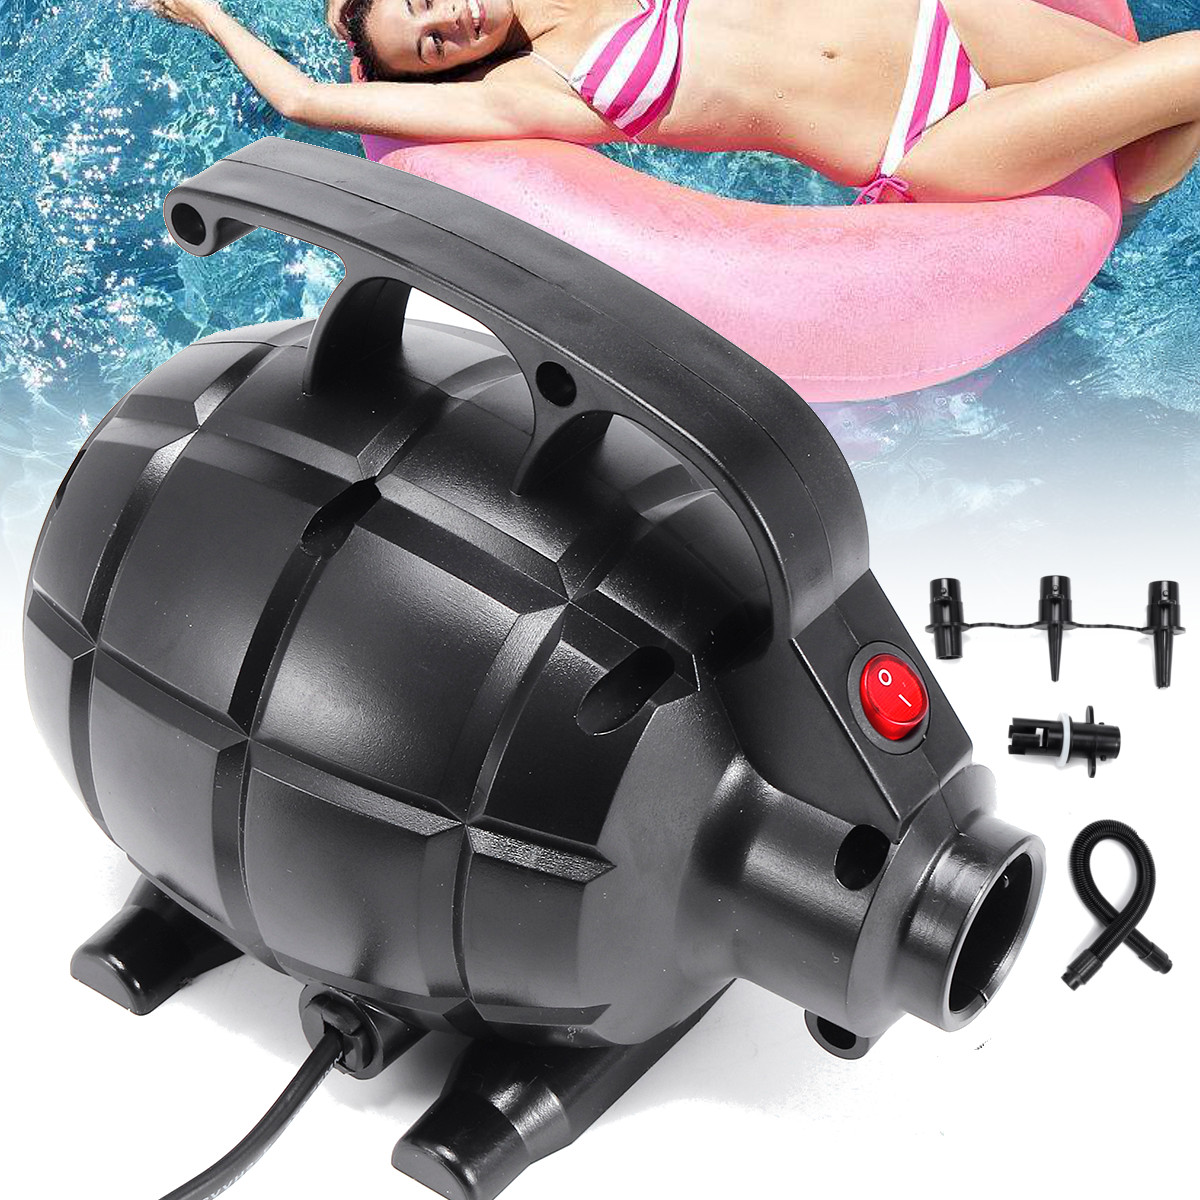 

Электрический воздух Насос для надувной подушки для гусеничных колес GYM Floor Tutling Airtrack Gymnastics Mat Inflatabl